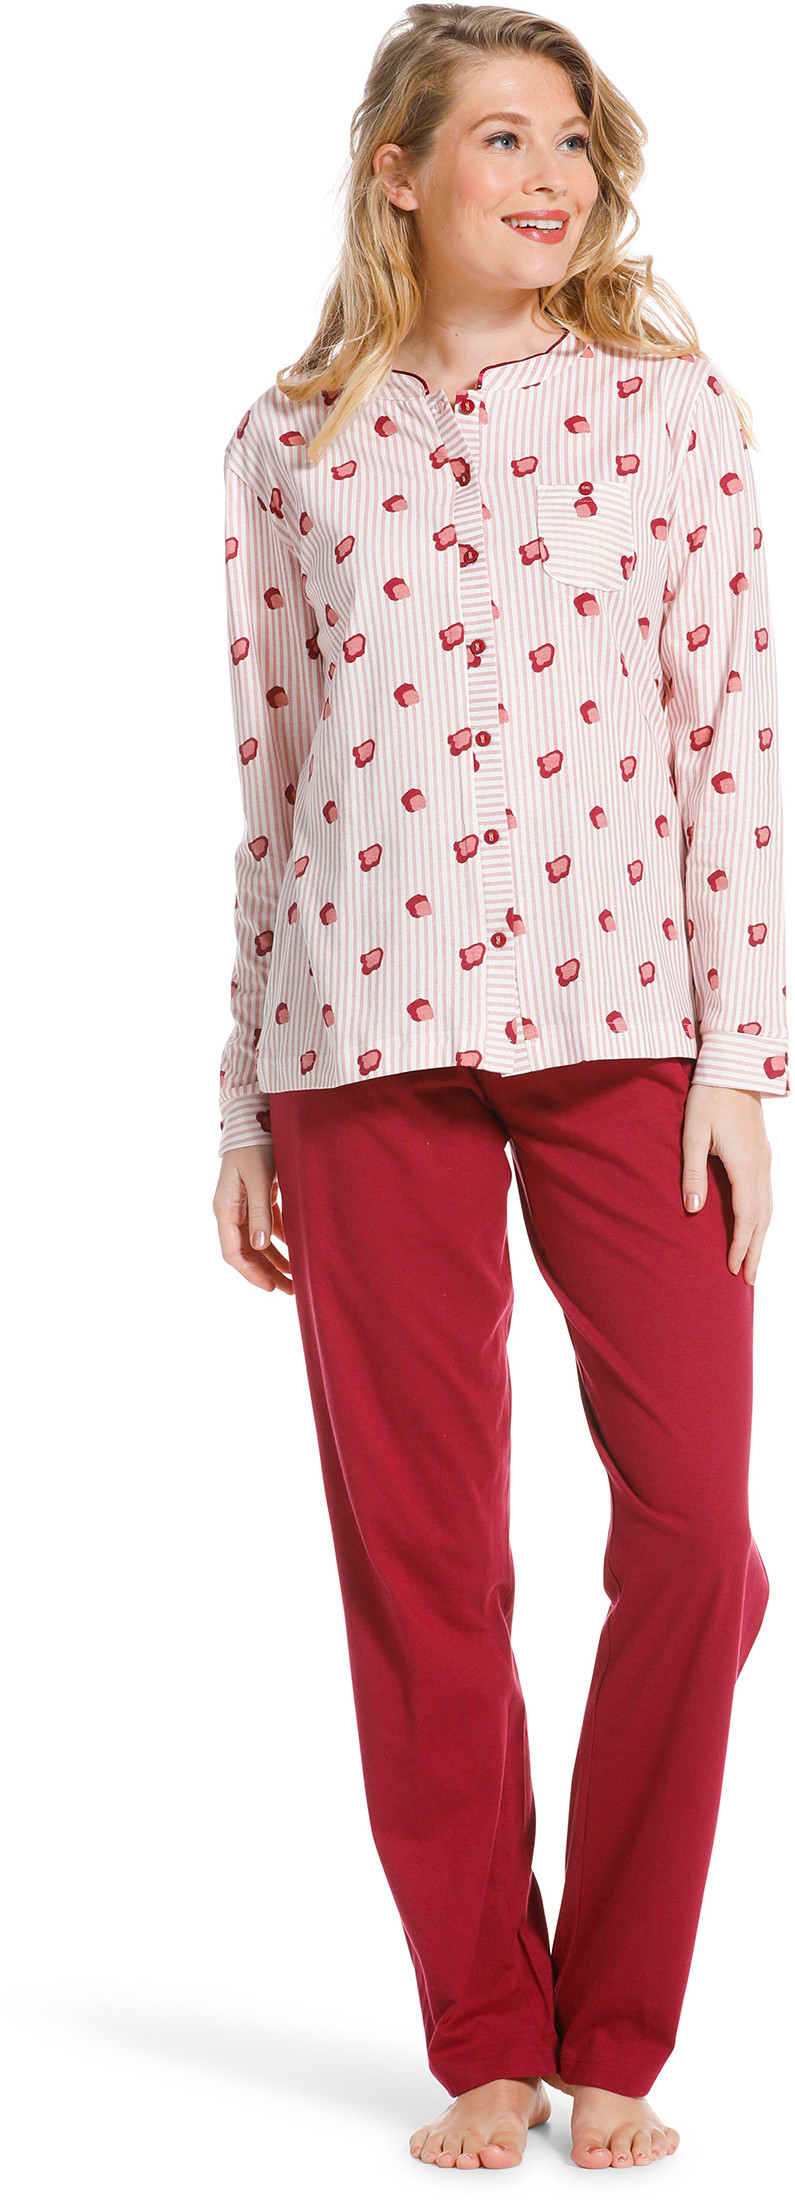 Pastunette doorknoop dames pyjama 20222-104-6-36